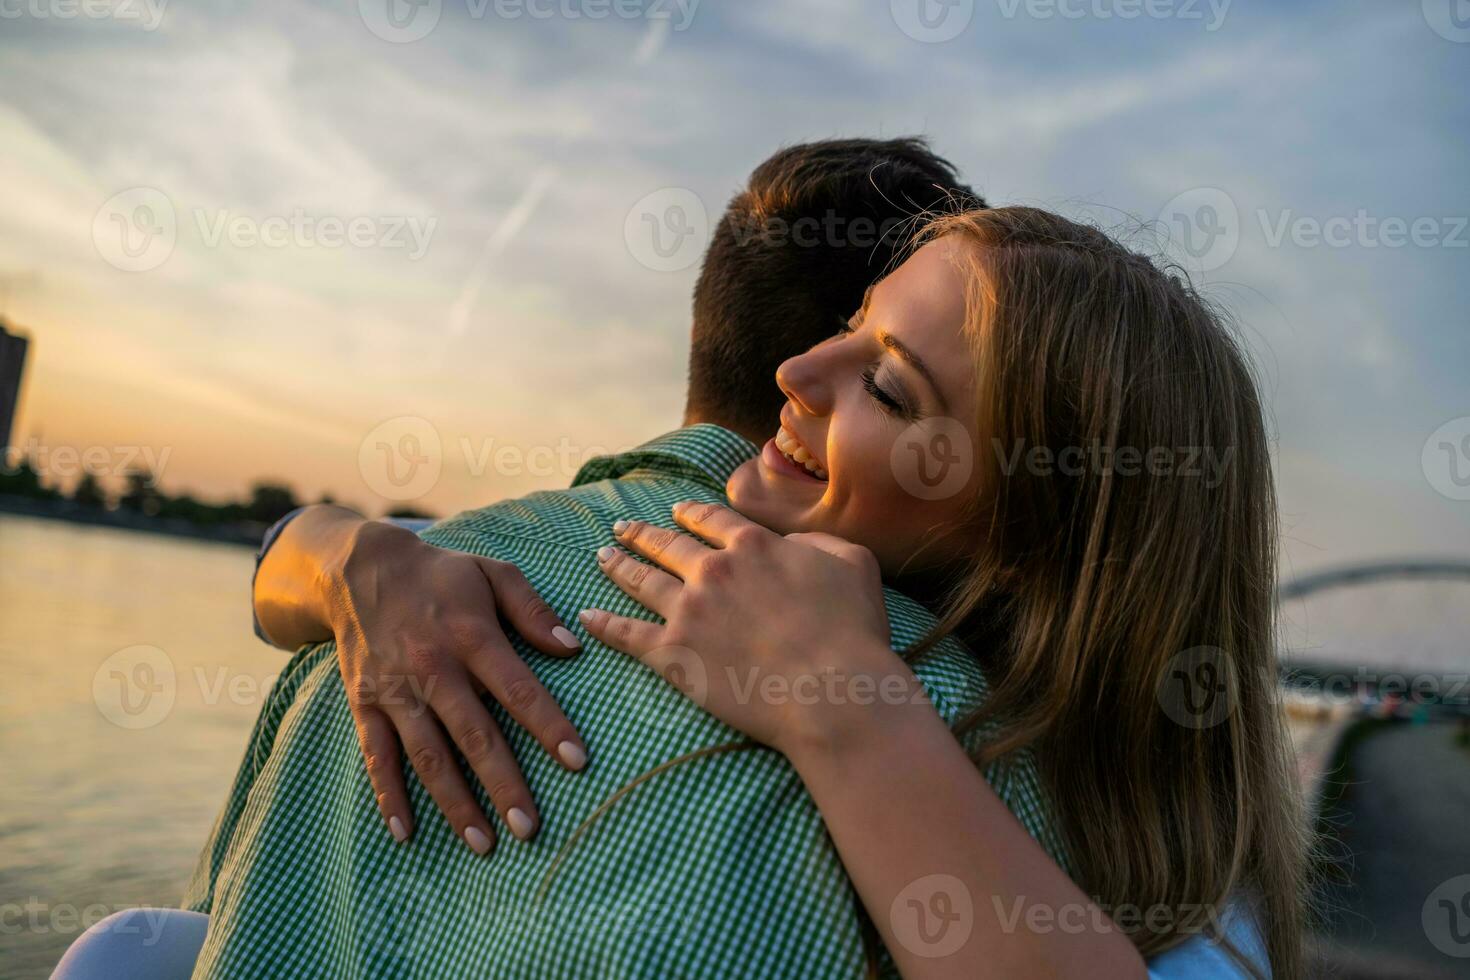 uma jovem casal sobre a pôr do sol foto